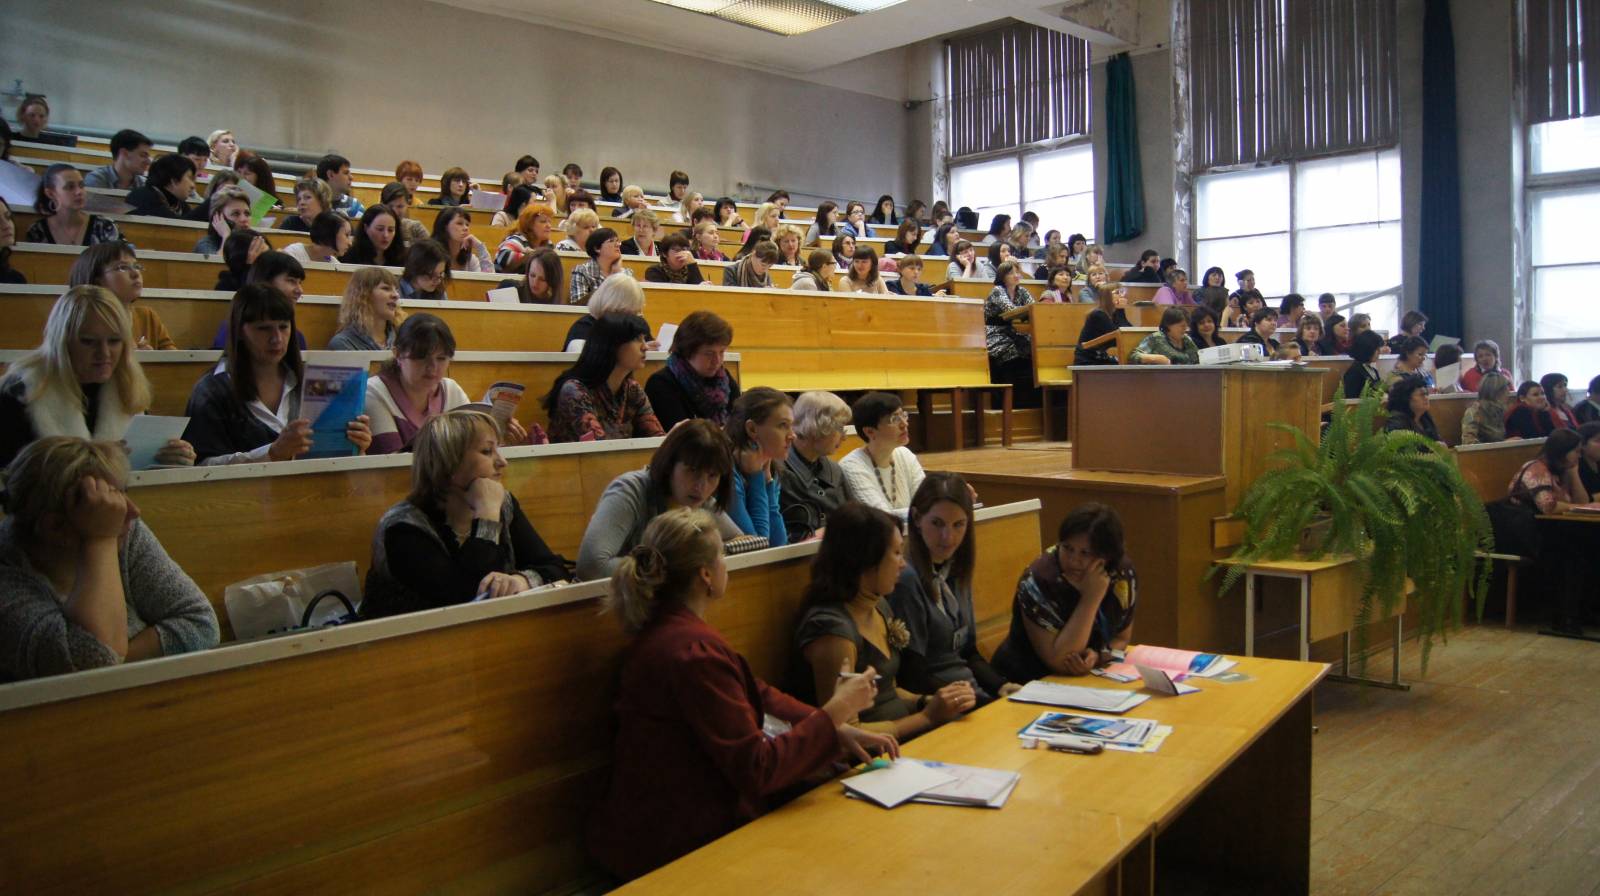 Сайт омский педагогический университет